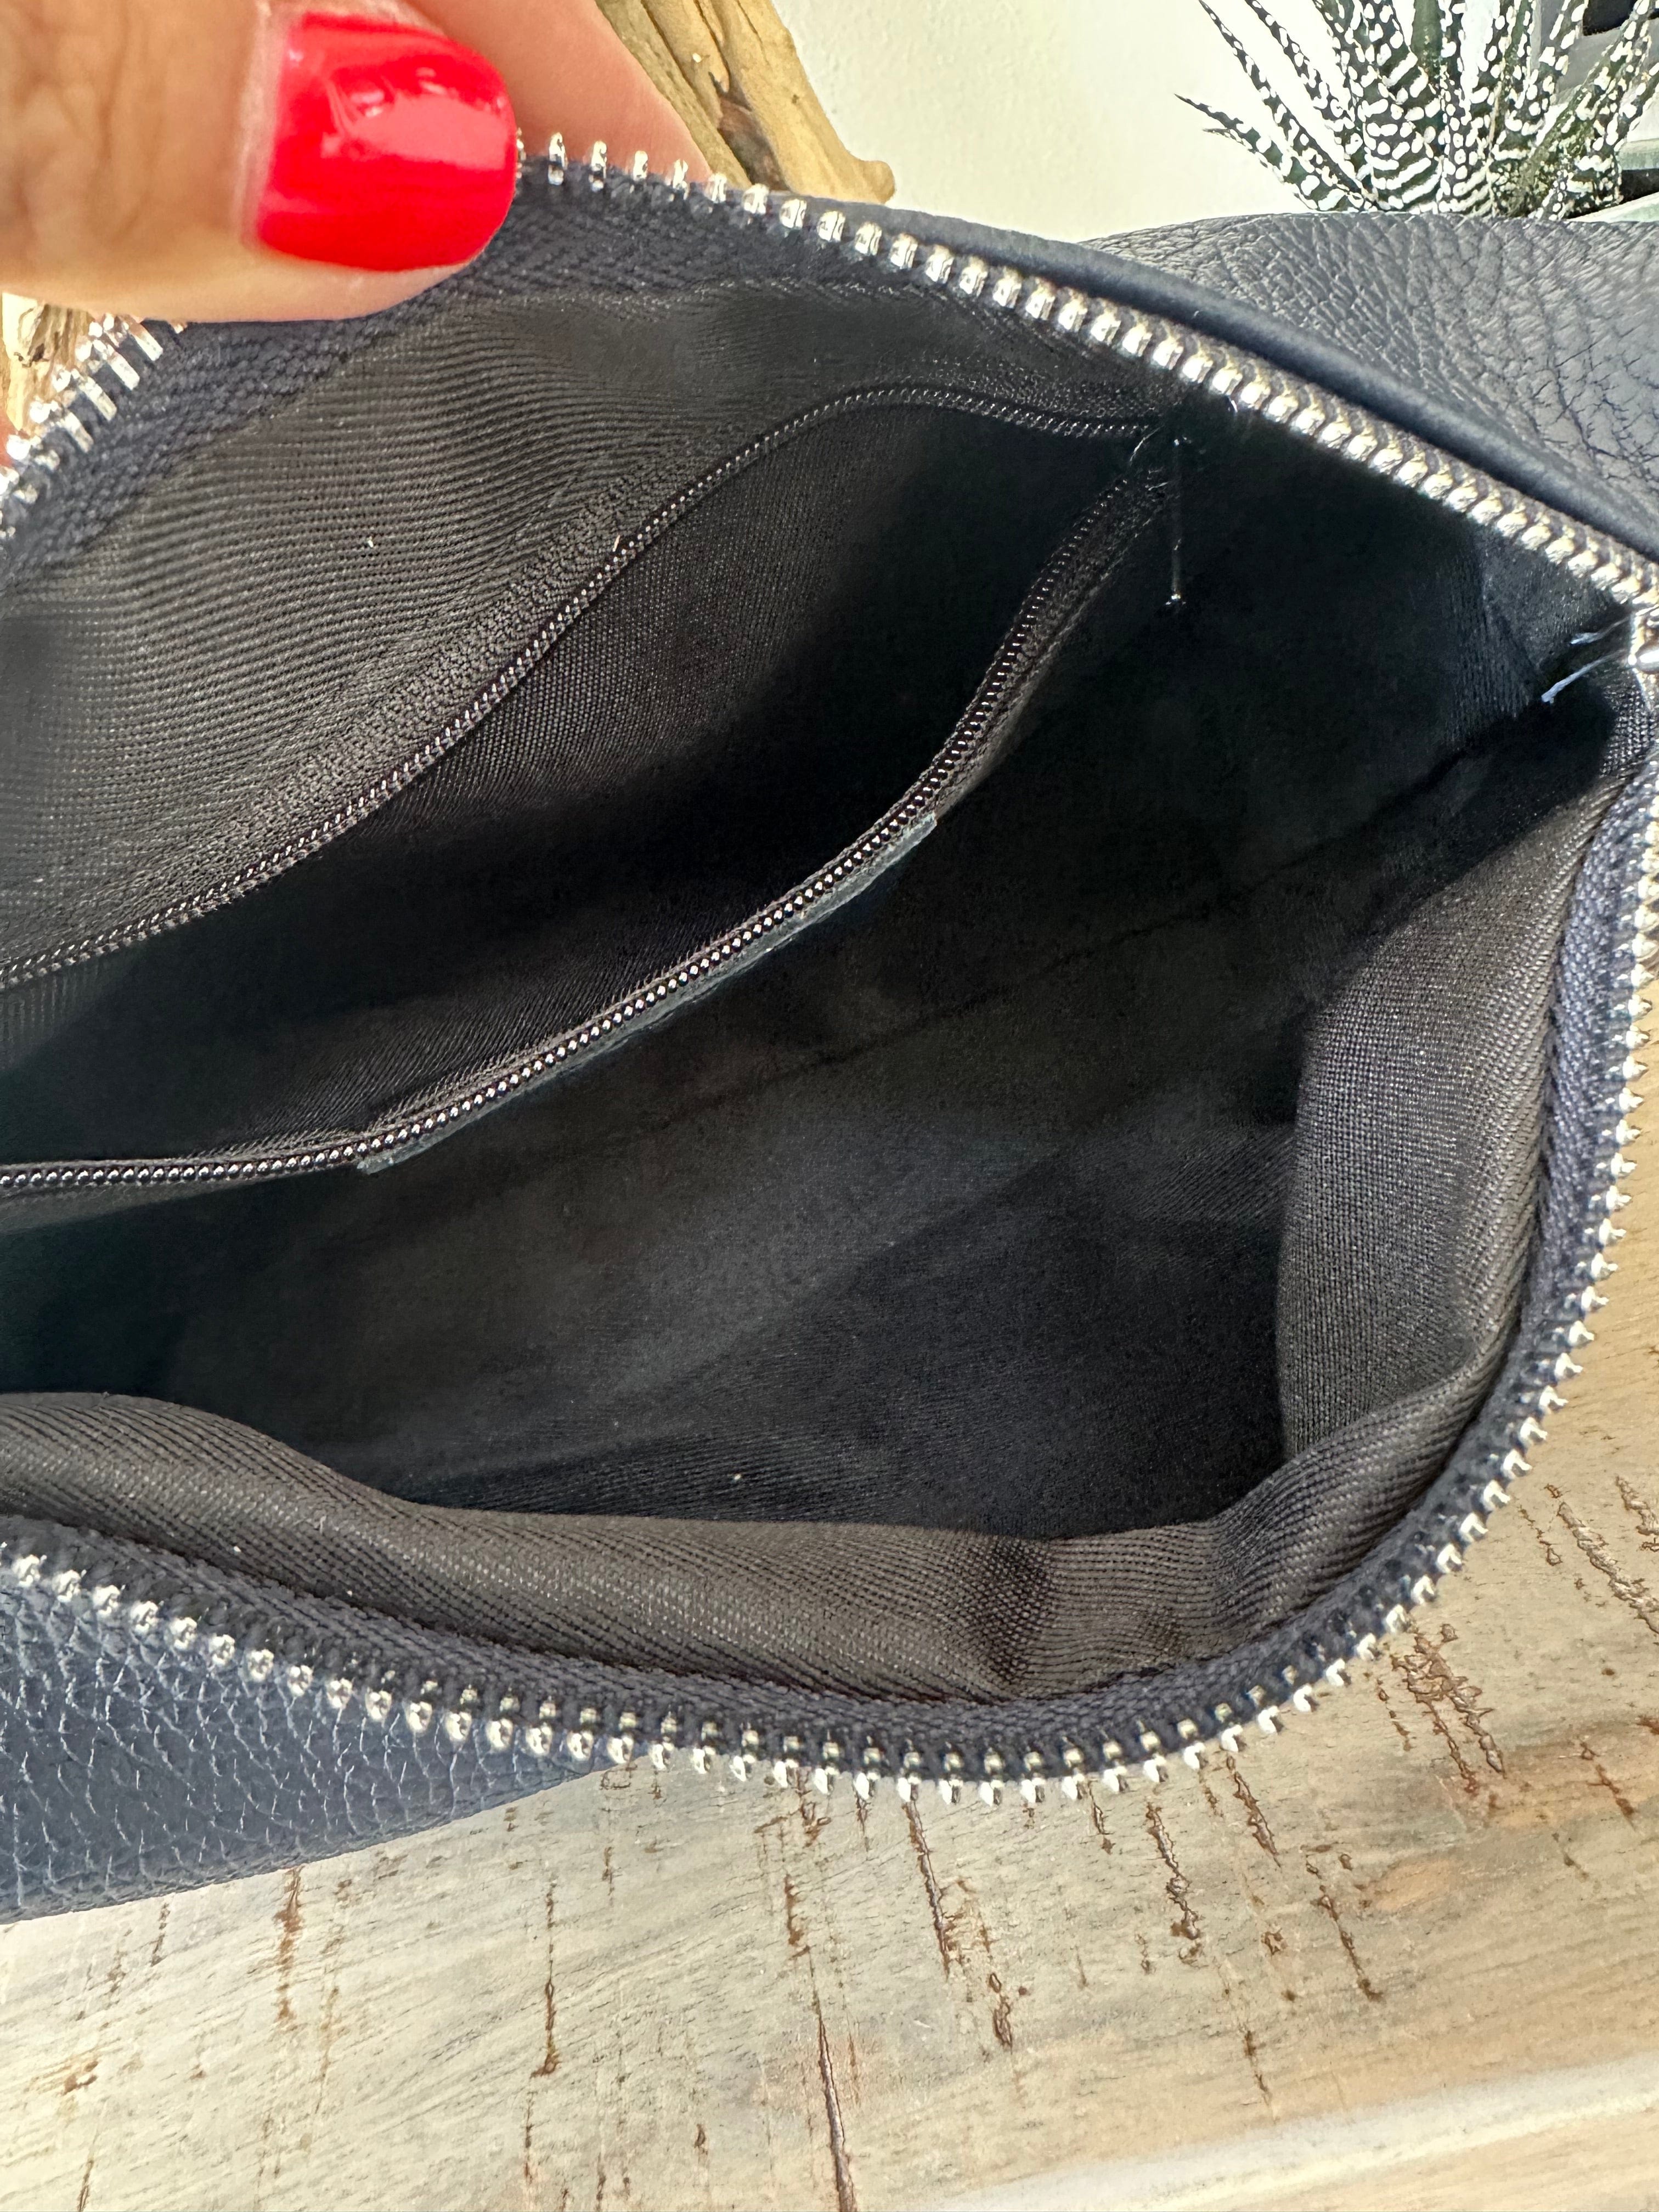 lusciousscarves Braided Handle Navy Italian Leather Handbag